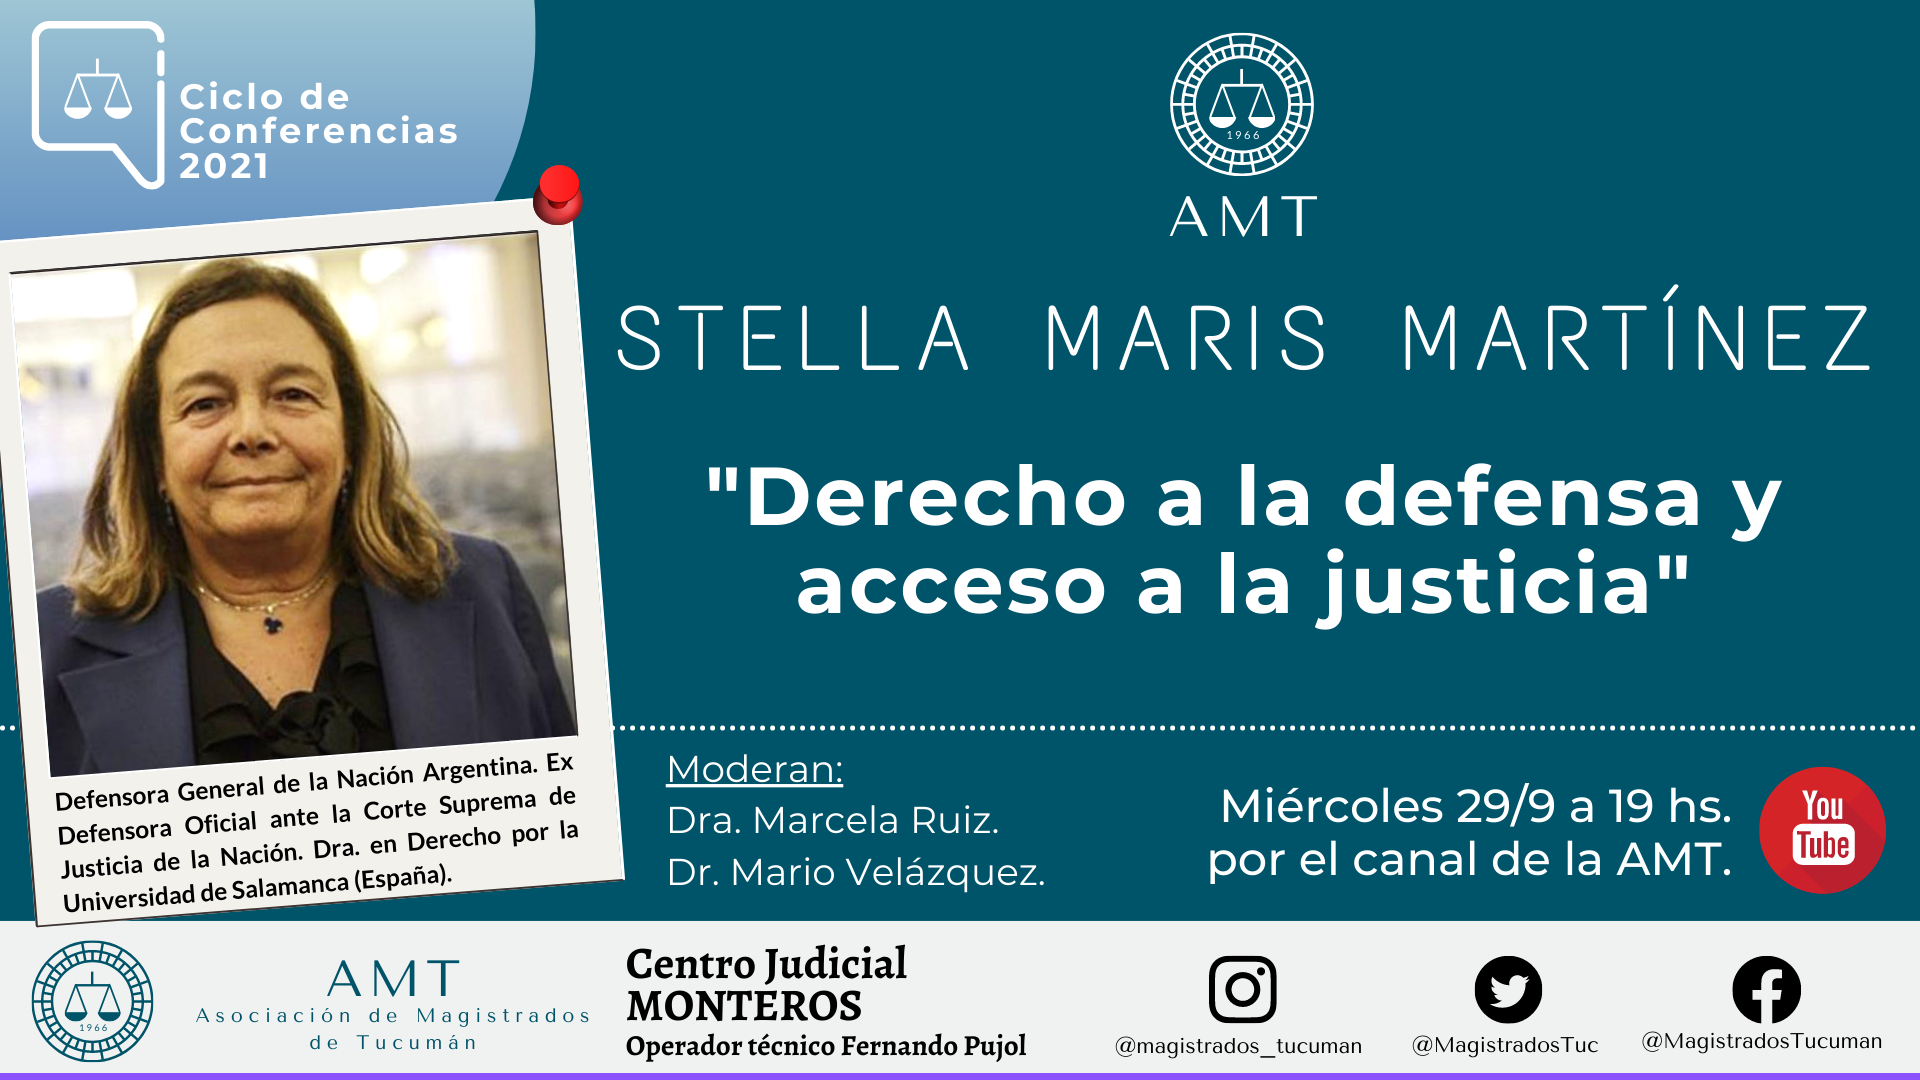 Vuelva a ver la conferencia de Stella Maris Martínez  «Derecho a la defensa y acceso a la justicia»